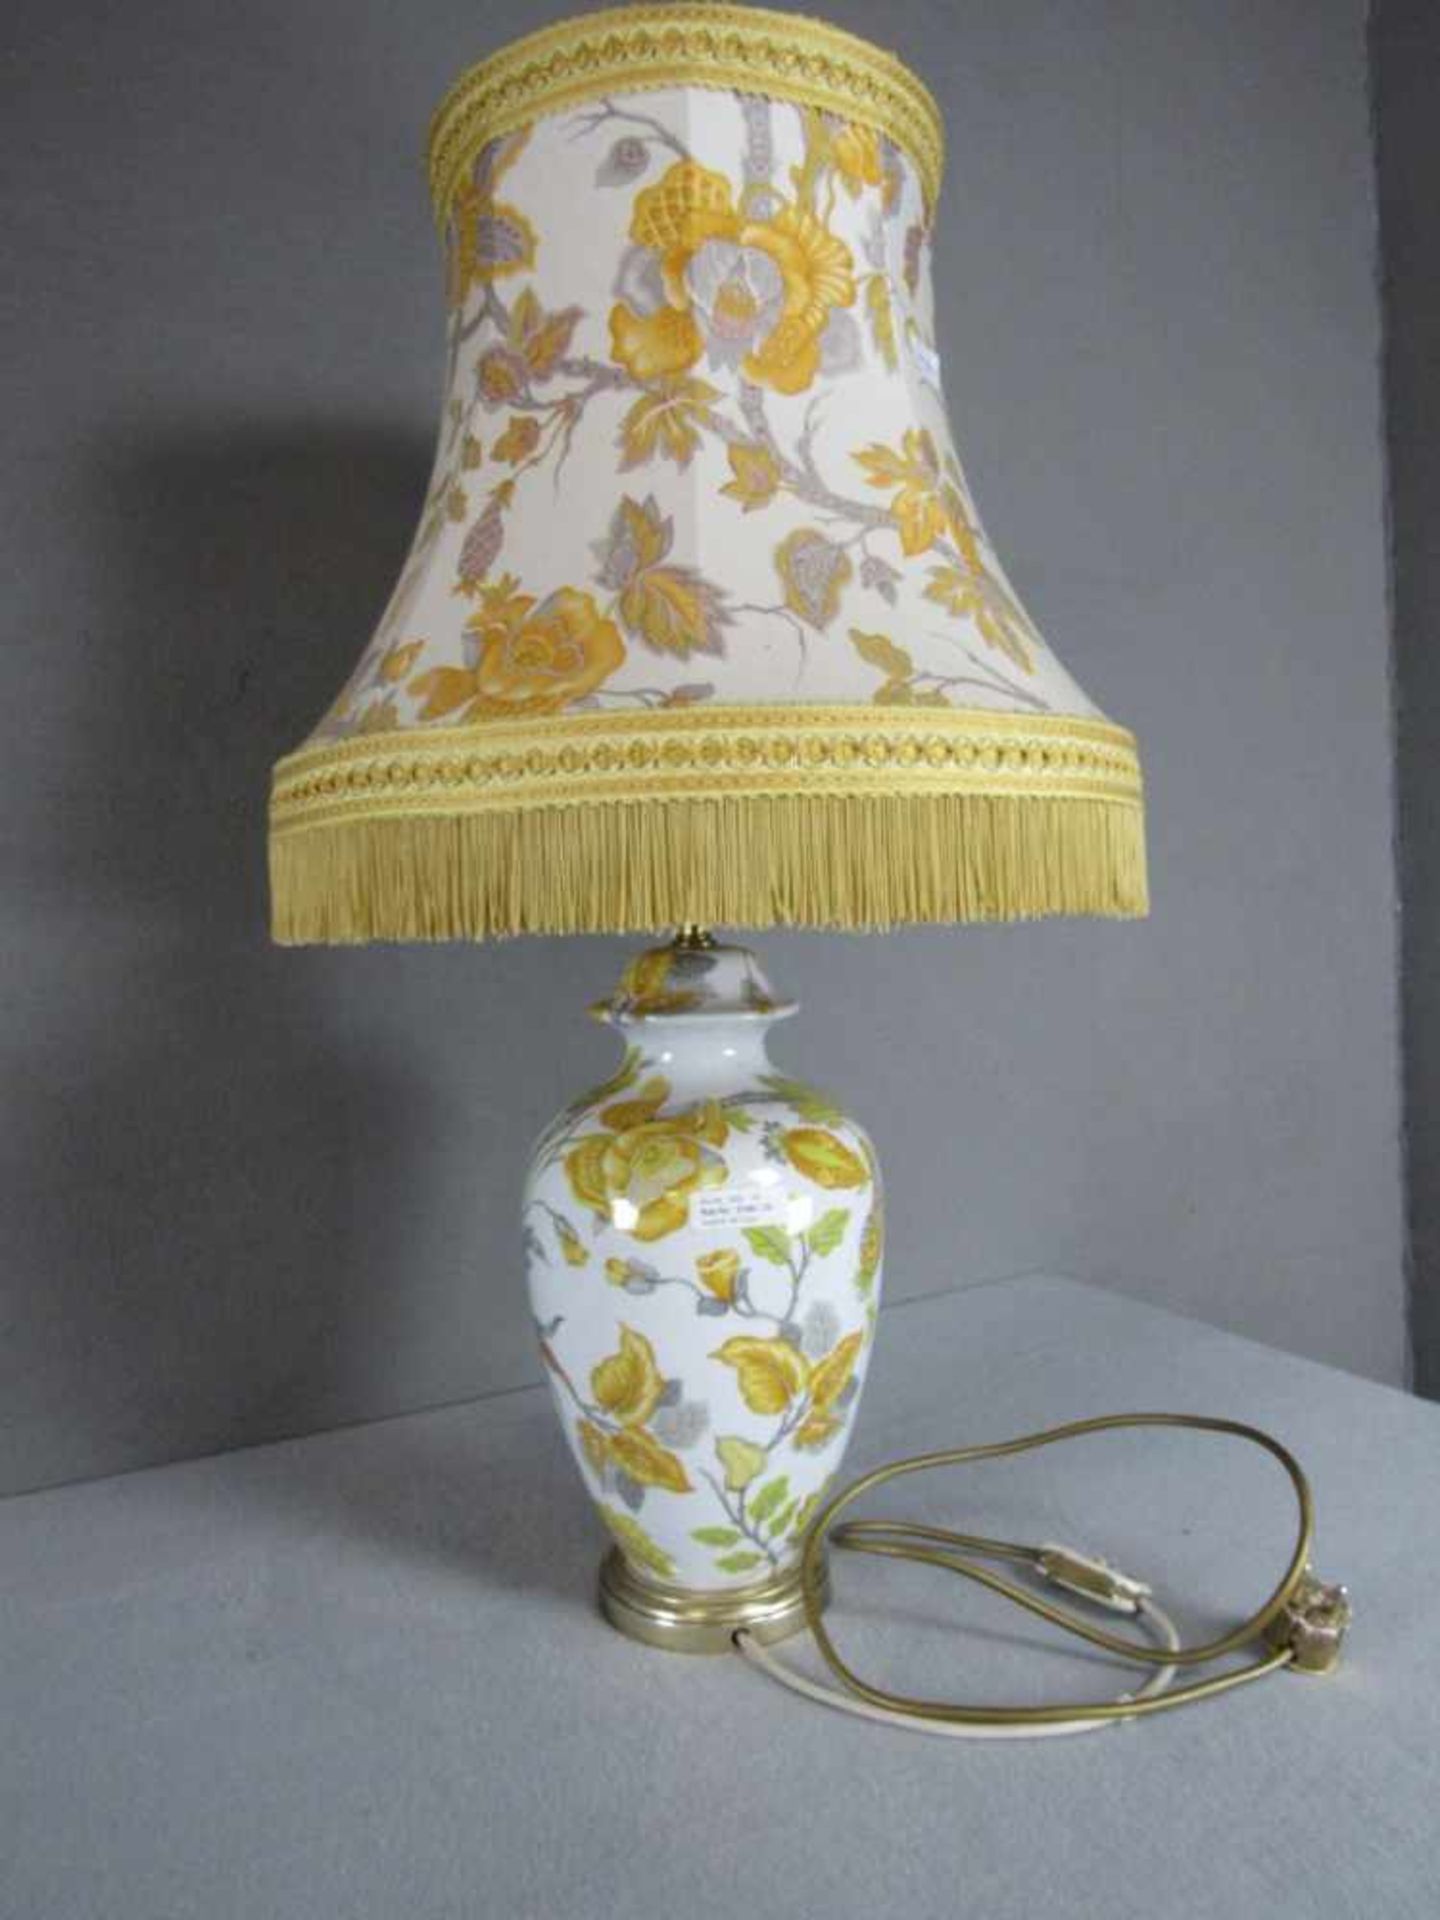 1 große Tischlampe Frankreich Porzellan De Paris unterseits gemarkt Schirm passig mit Blumendekor